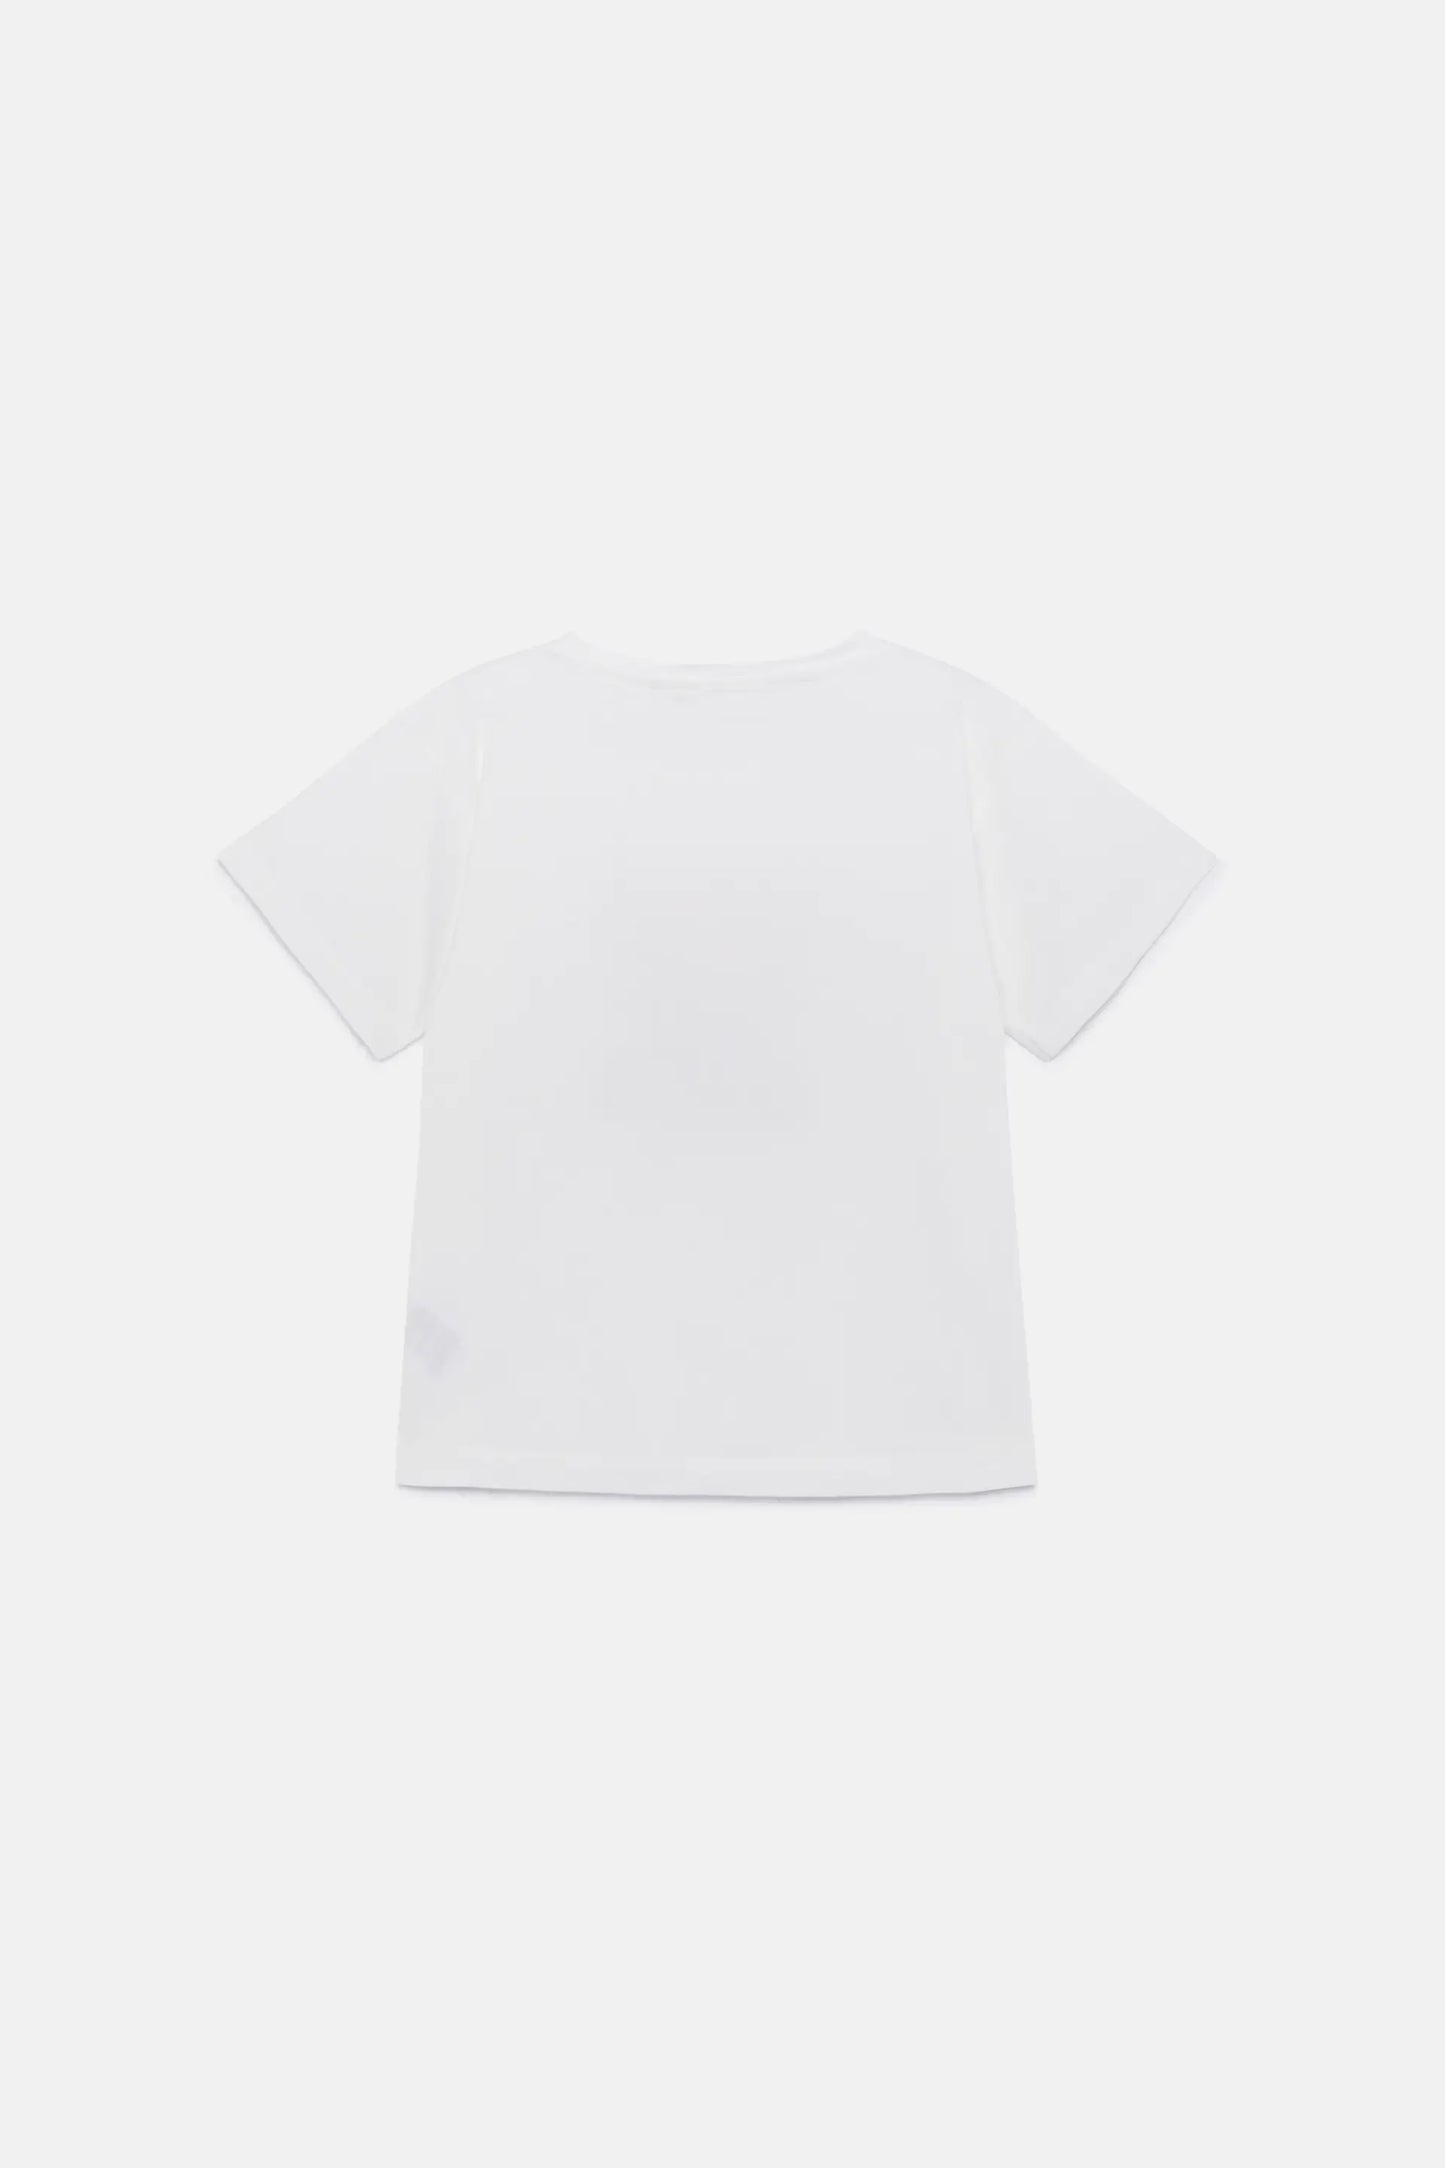 Camiseta unisex print perro blanca